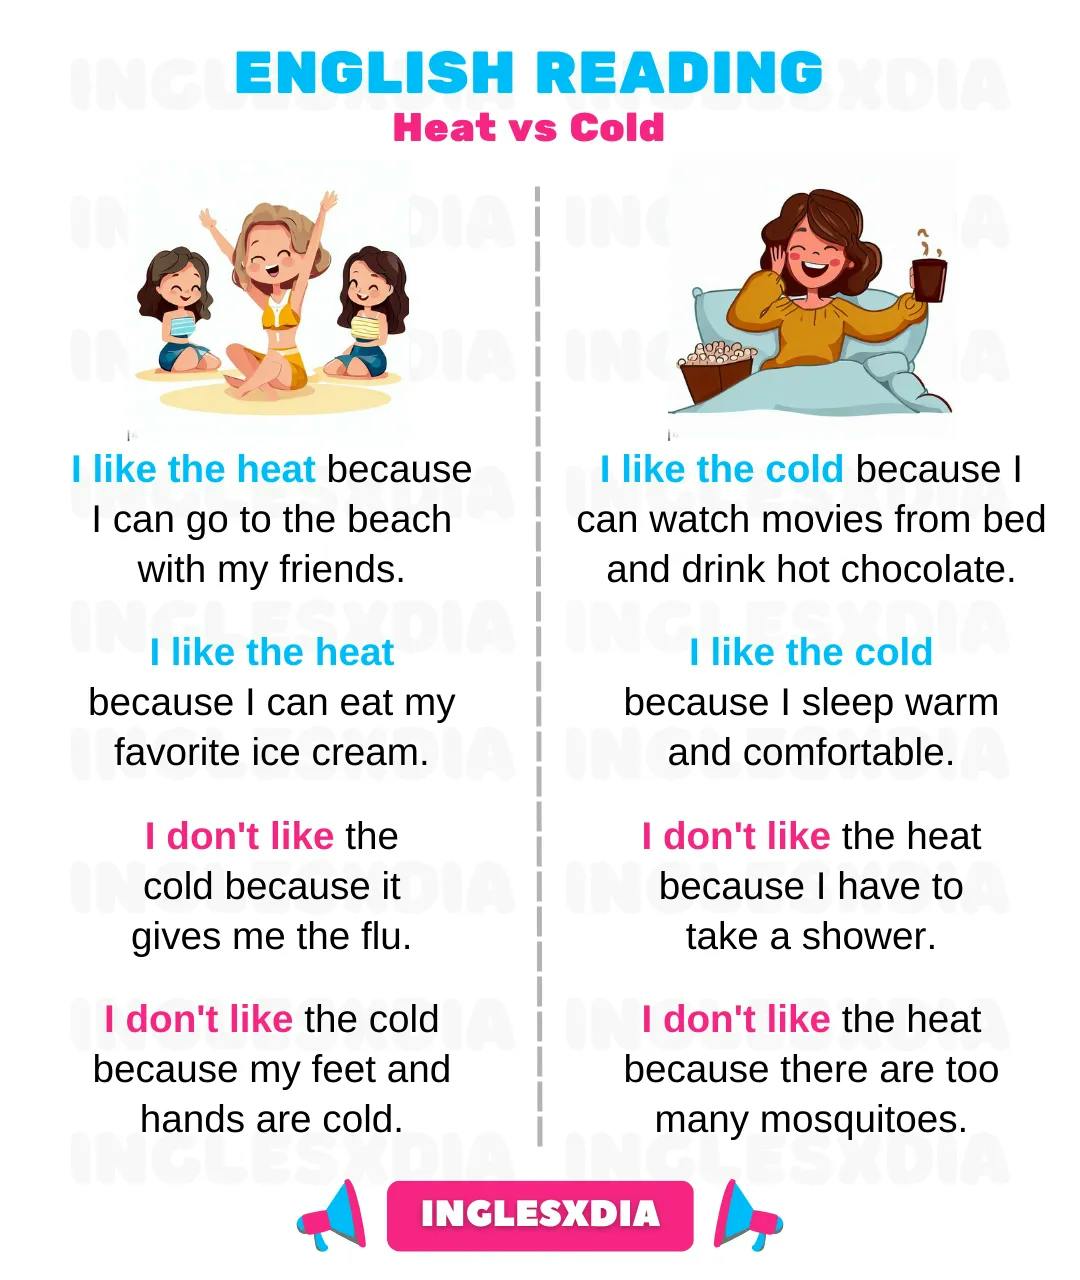 Heat vs Cold